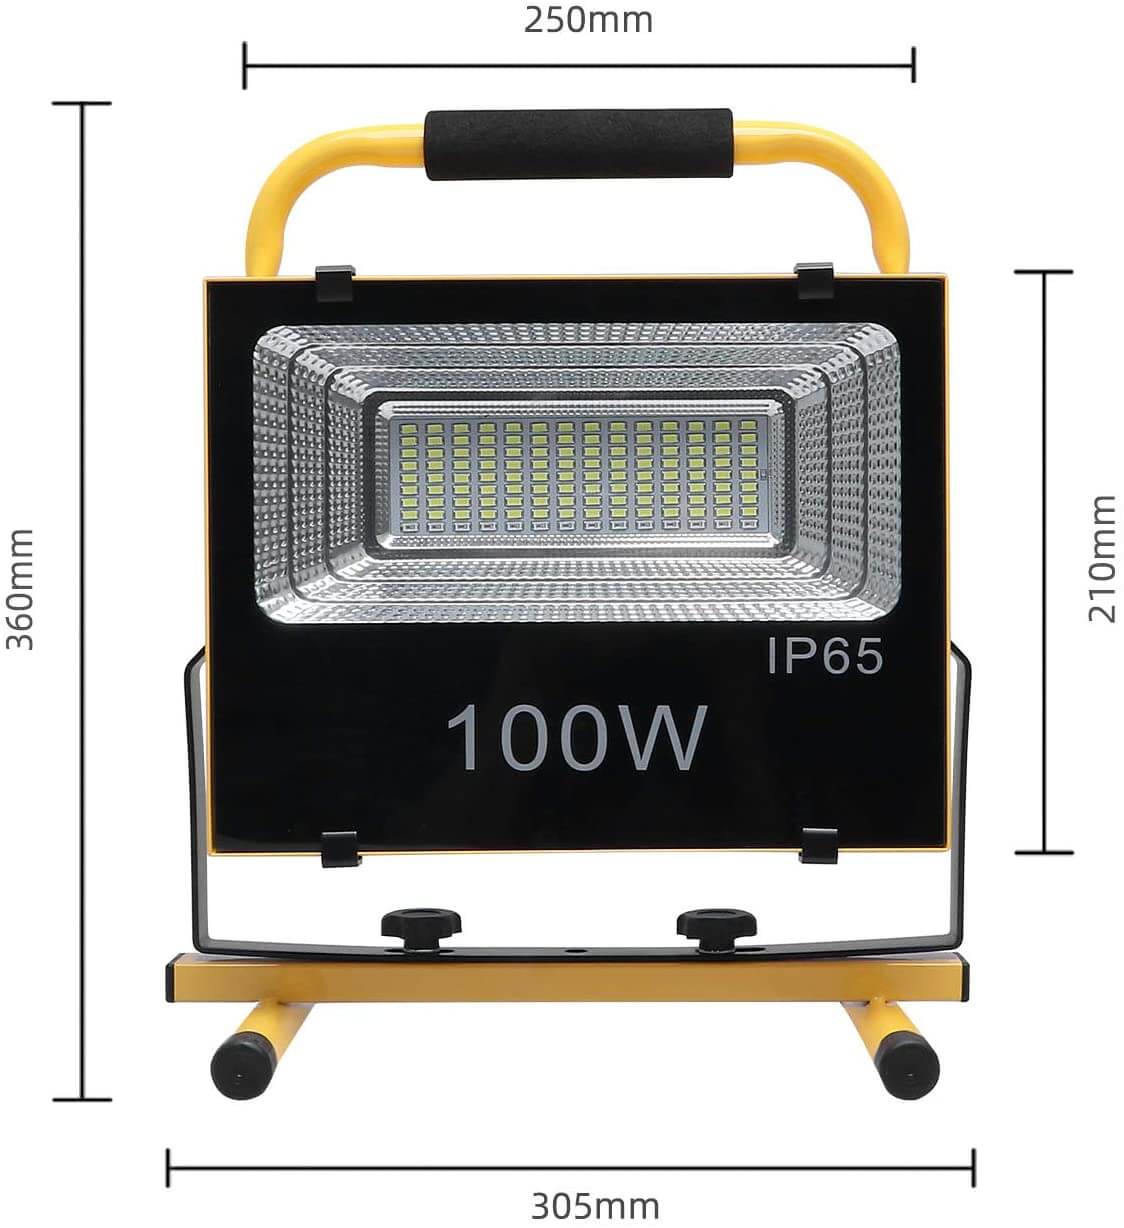 ⚡⚡Foco LED recargable⚡⚡ $150 9w Iluminacion 100w Batería litio